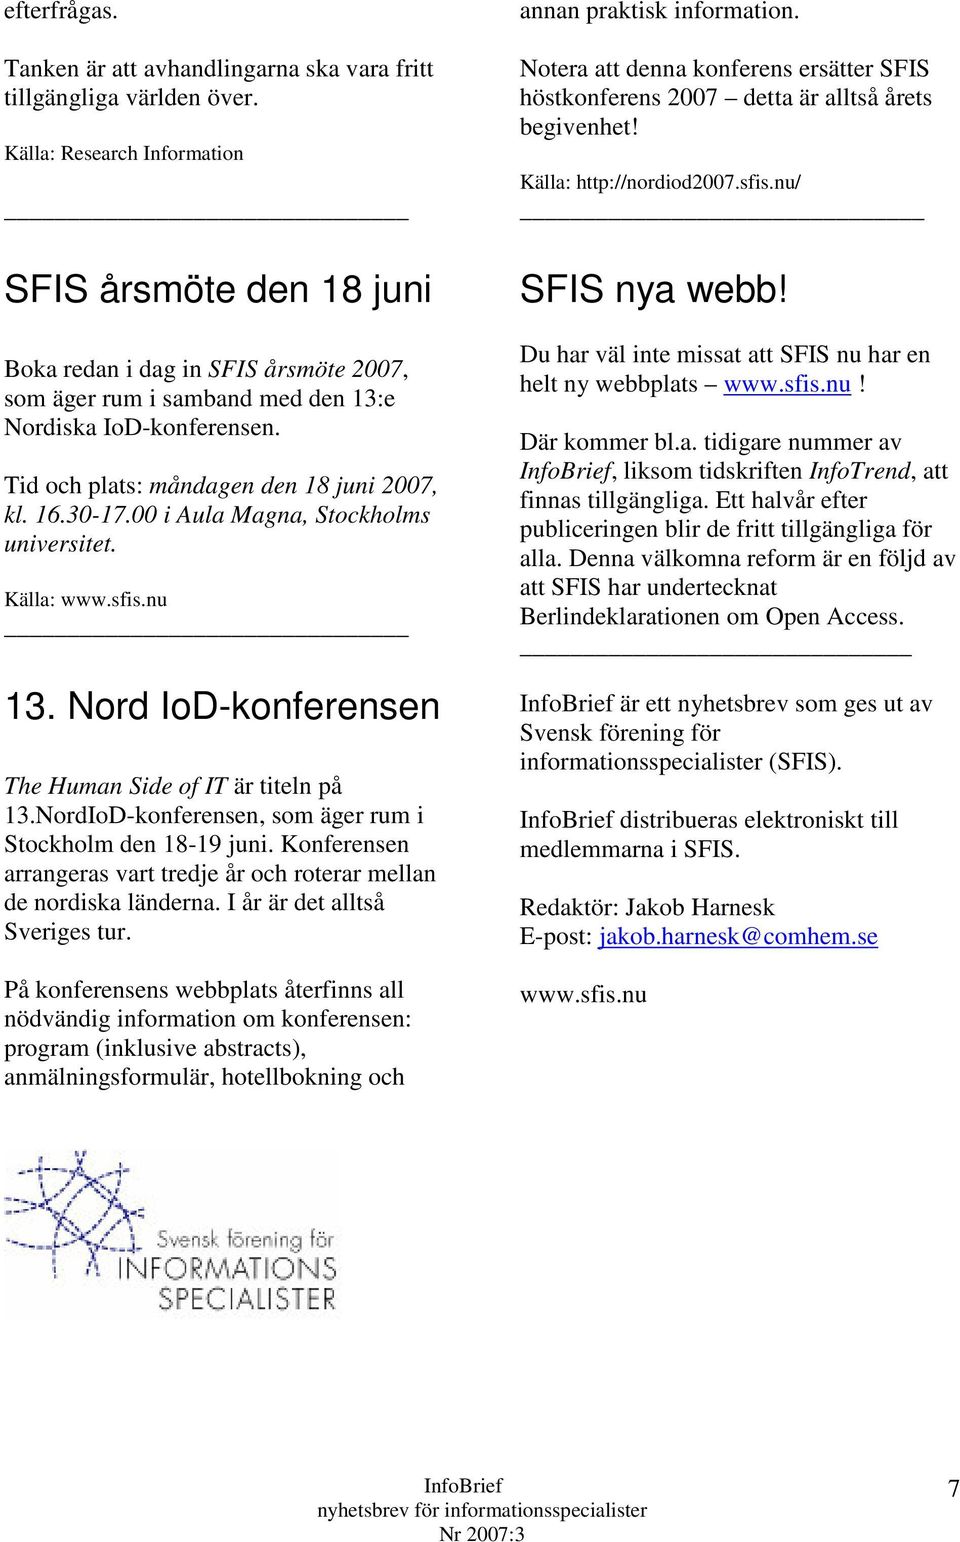 16.30-17.00 i Aula Magna, Stockholms universitet. Källa: www.sfis.nu 13. Nord IoD-konferensen The Human Side of IT är titeln på 13.NordIoD-konferensen, som äger rum i Stockholm den 18-19 juni.